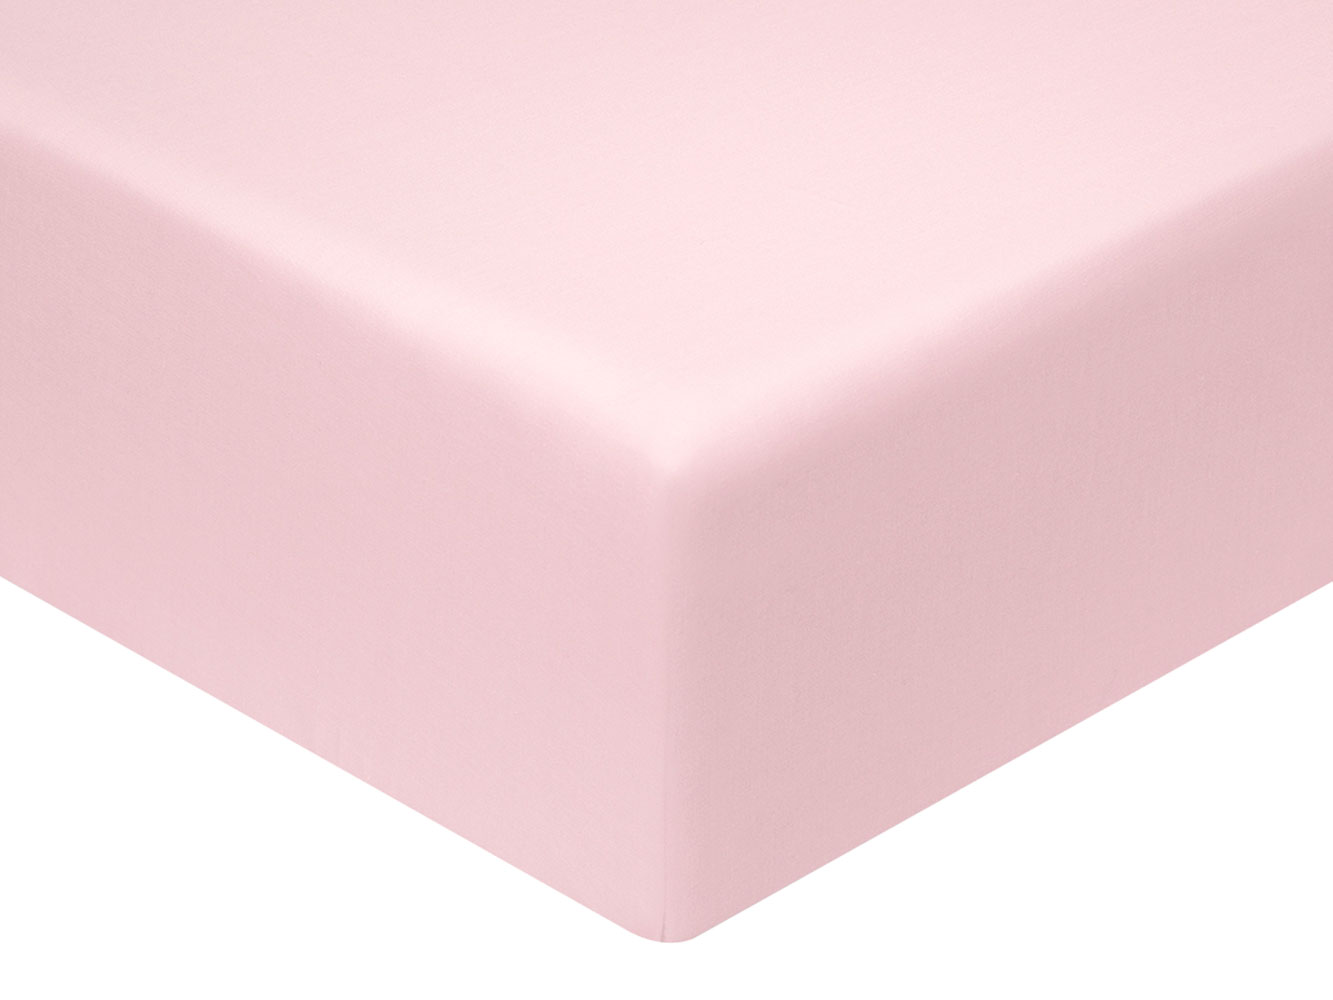 Простыня Простыня на резинке Лиора сатин светло-розовая Лиора светло-розовый на резинке фото 1